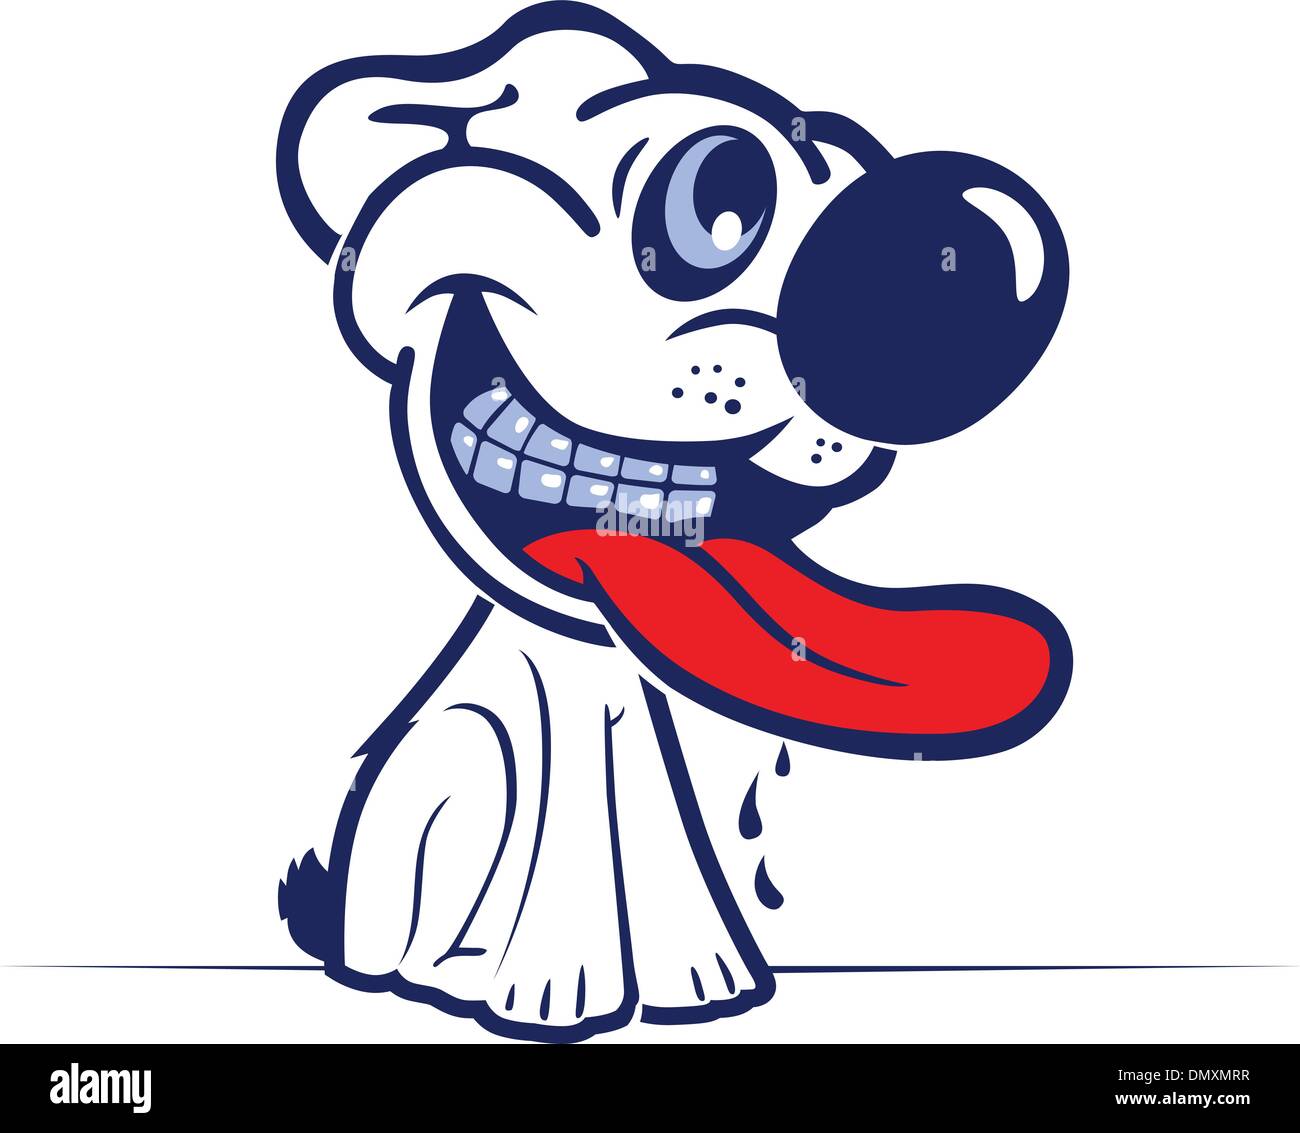 cartoon dog smile face Stock Vector